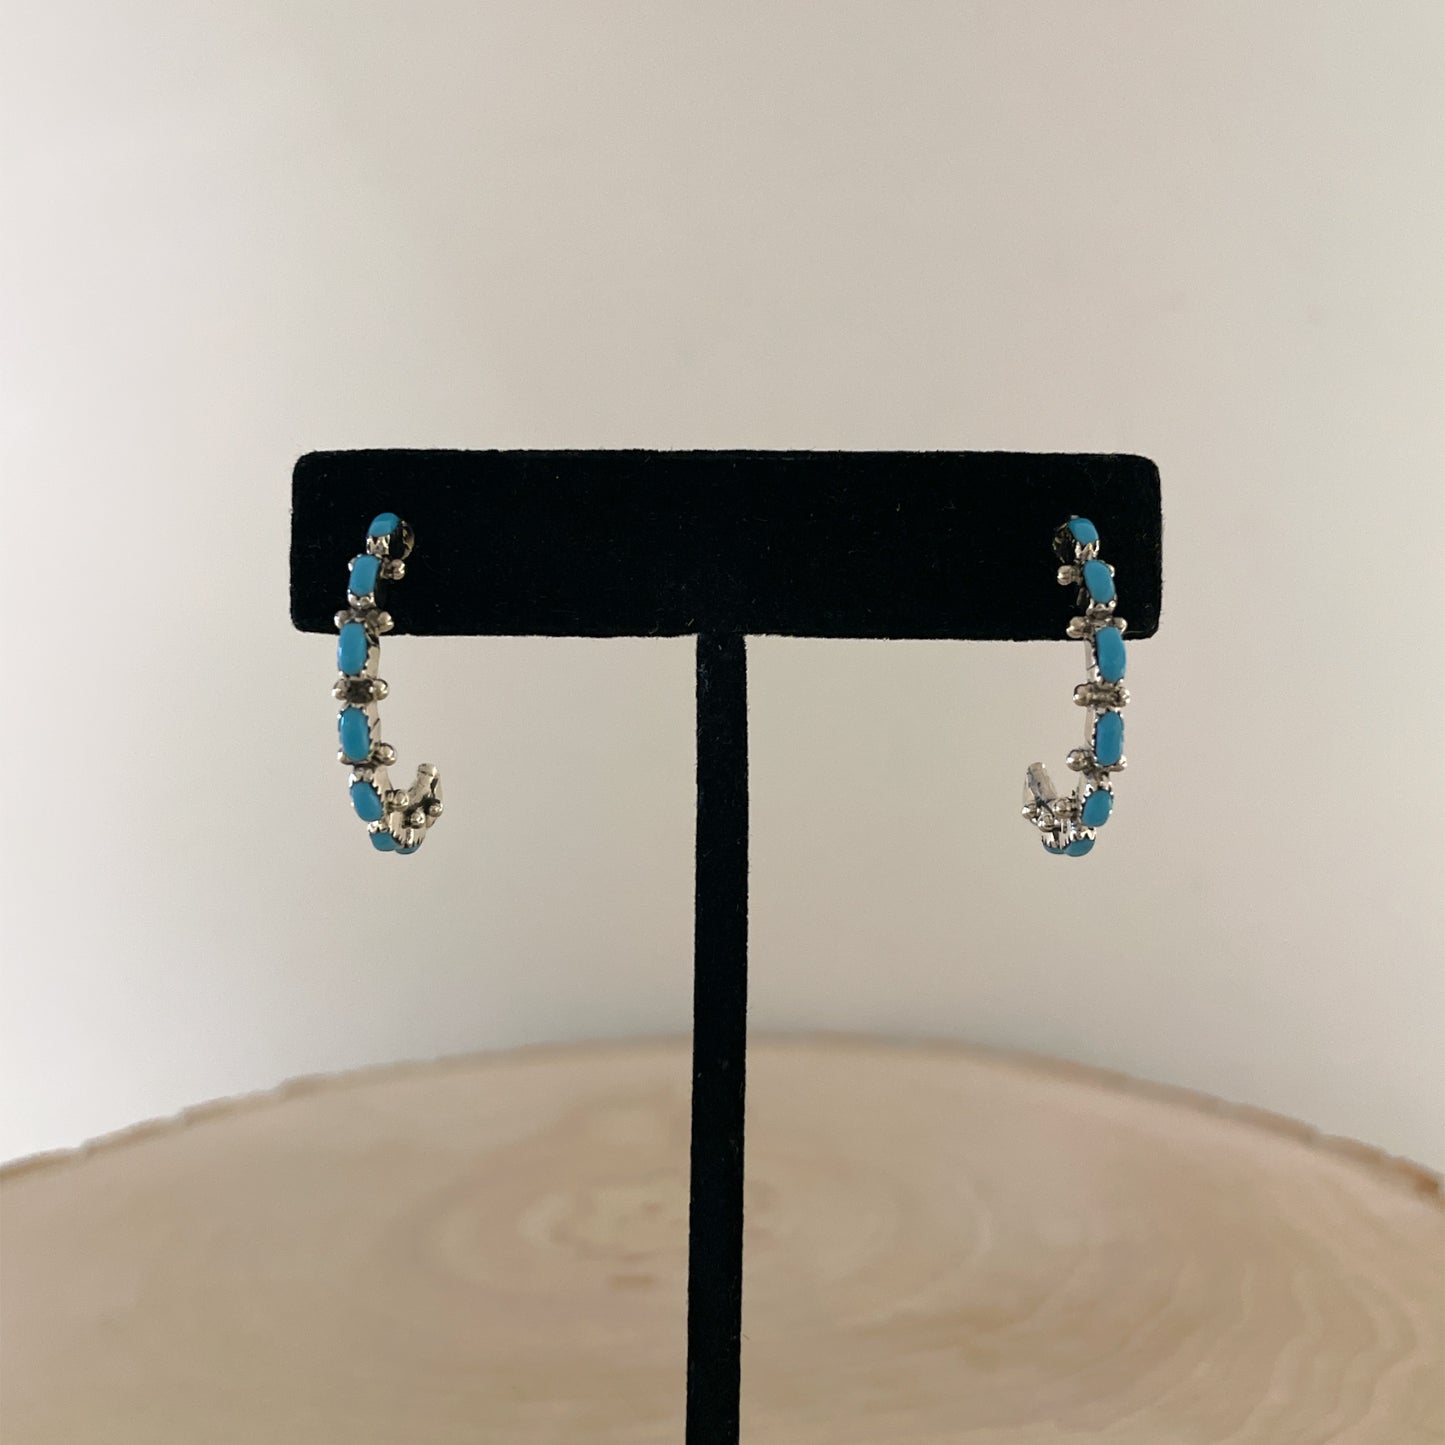 Needlepoint Turquoise Hoop Earrings 1"